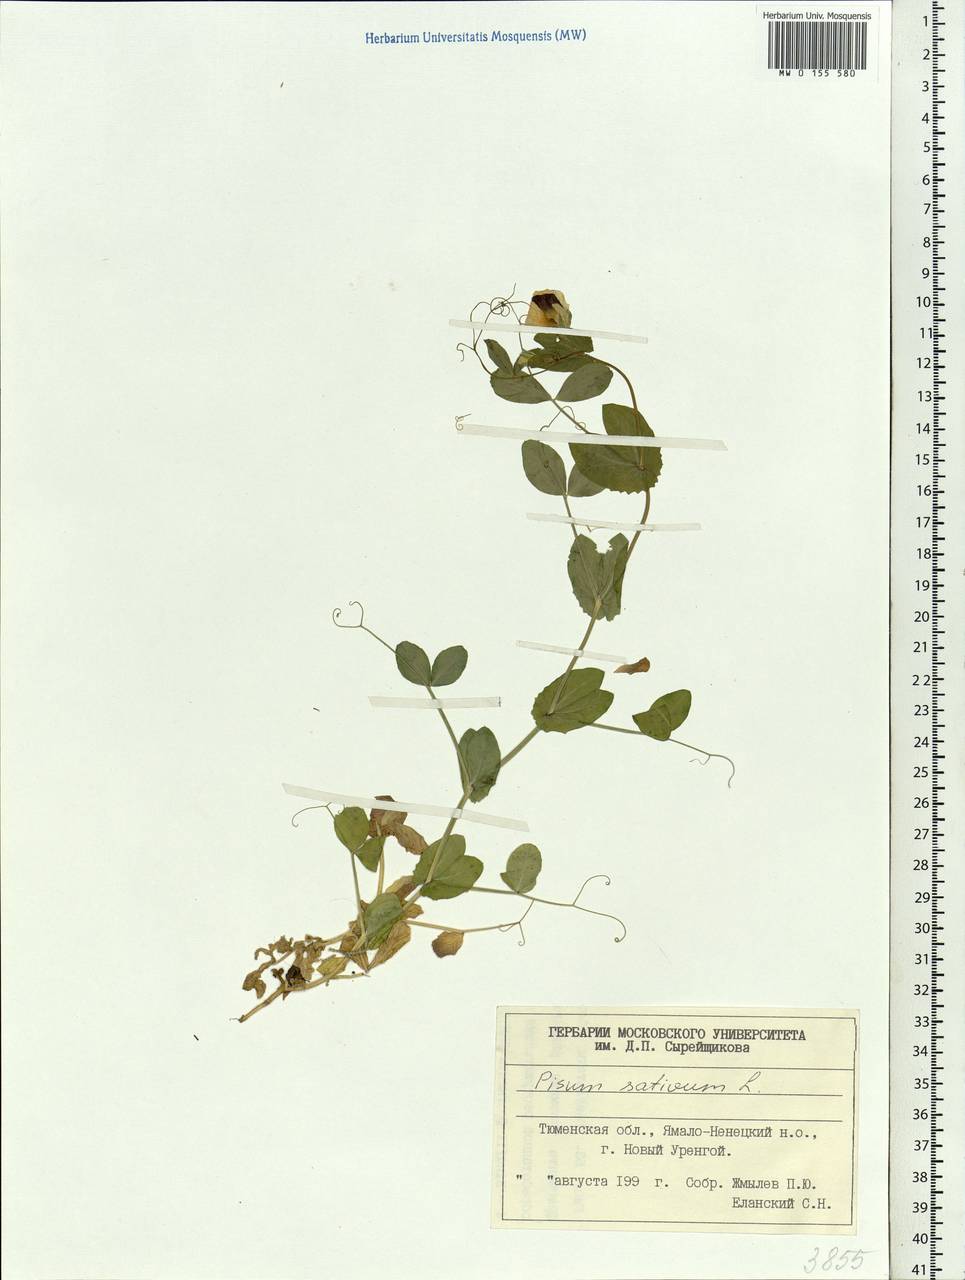 Lathyrus oleraceus Lam., Siberia, Western Siberia (S1) (Russia)